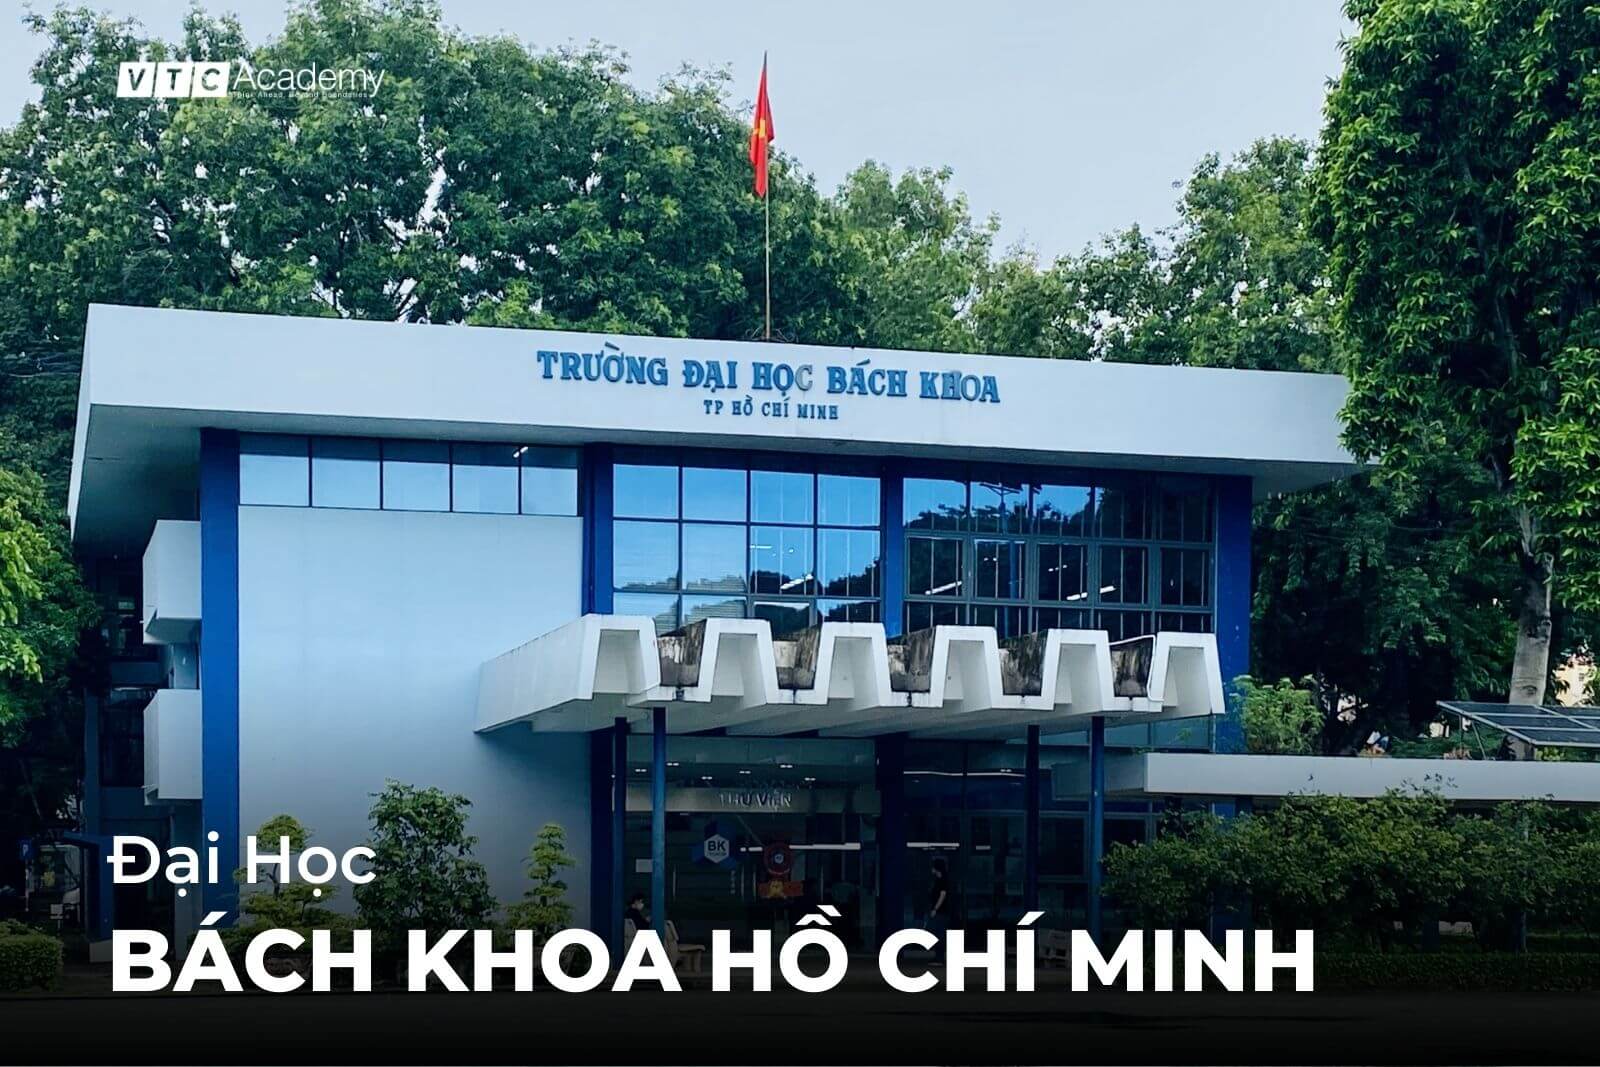 Đại học Bách khoa Hồ Chí Minh